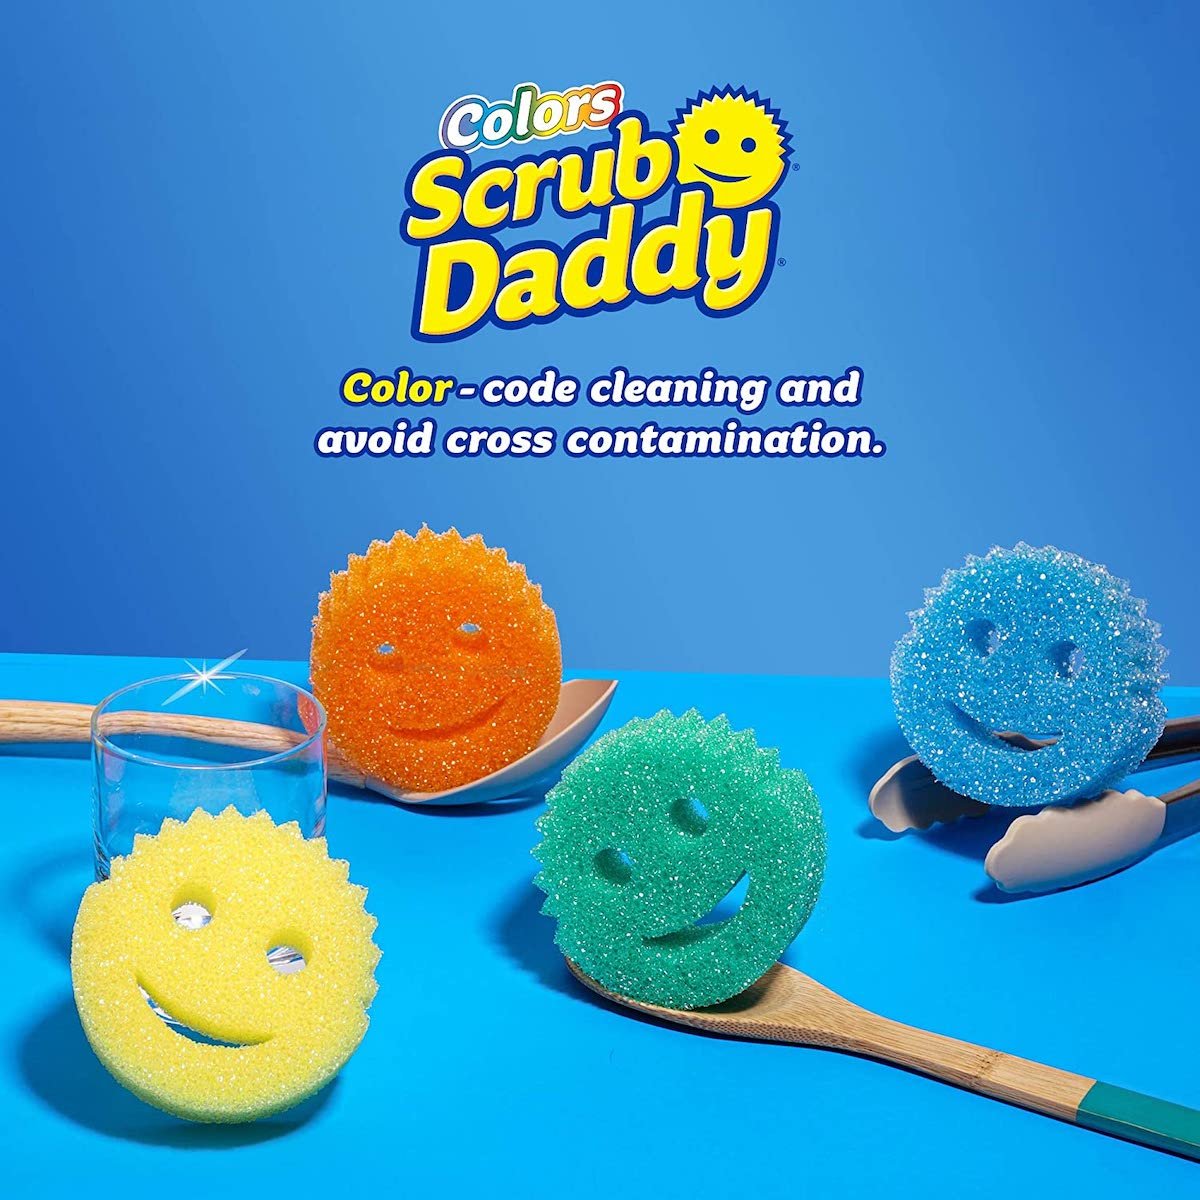 20 Jobs You Didn't Know Scrub Daddy Could Do - Scrub Daddy PL